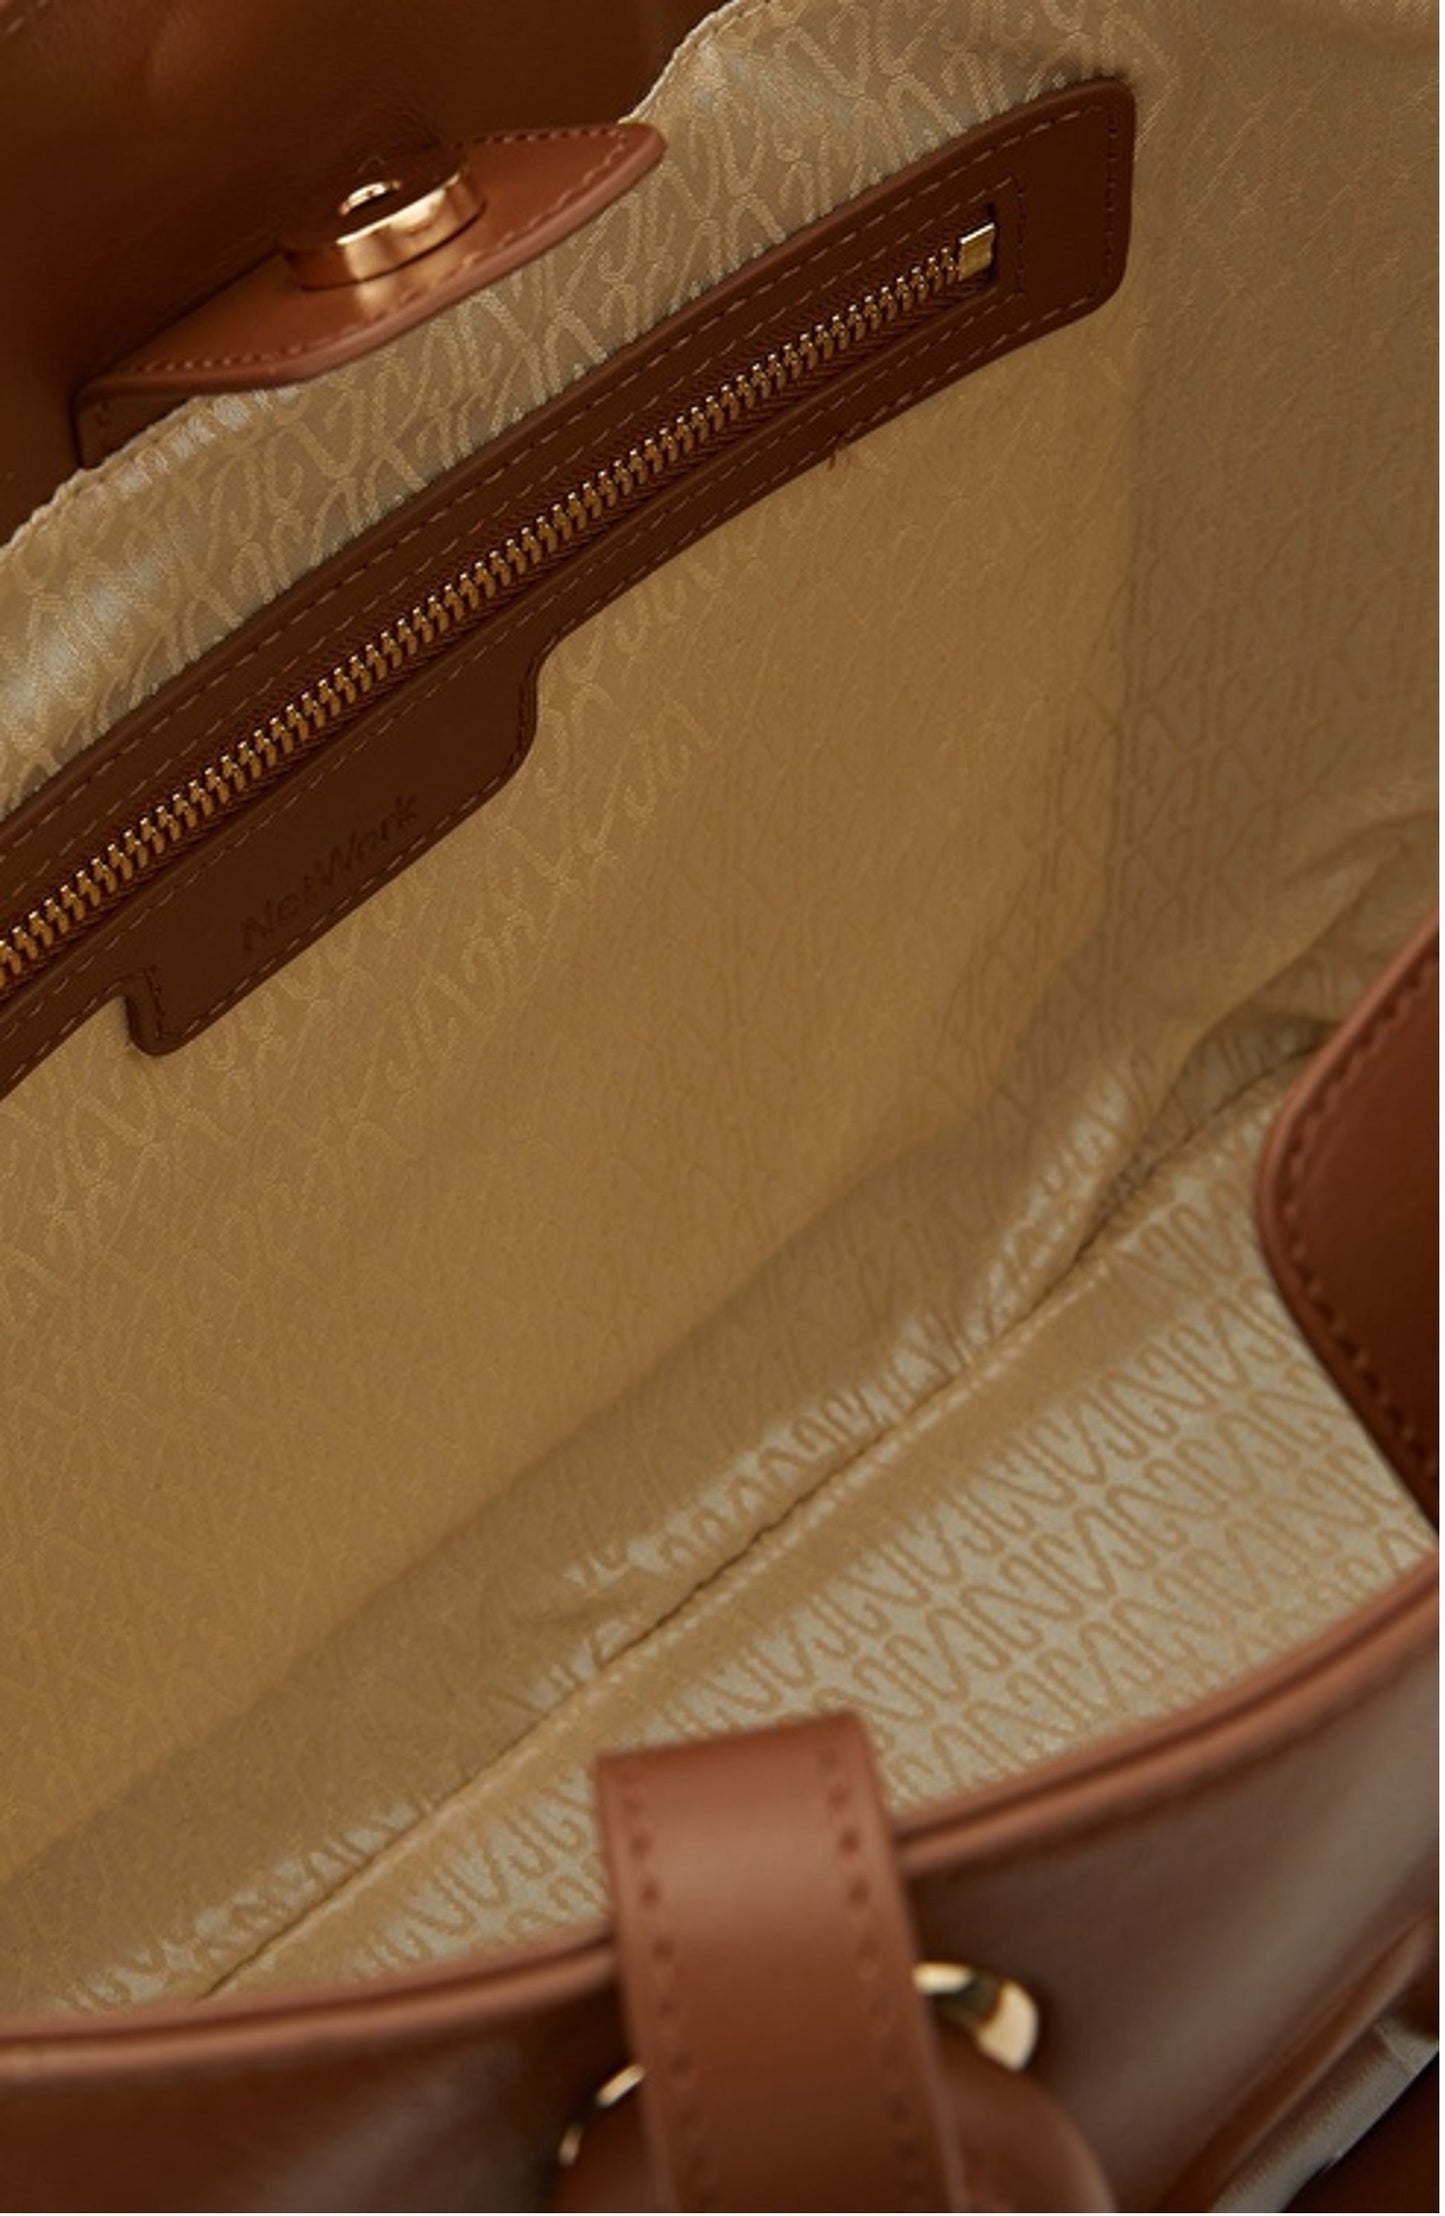 Damenhandtasche 100% Ledertasche Braune Farbe Griff und Schulterriemen